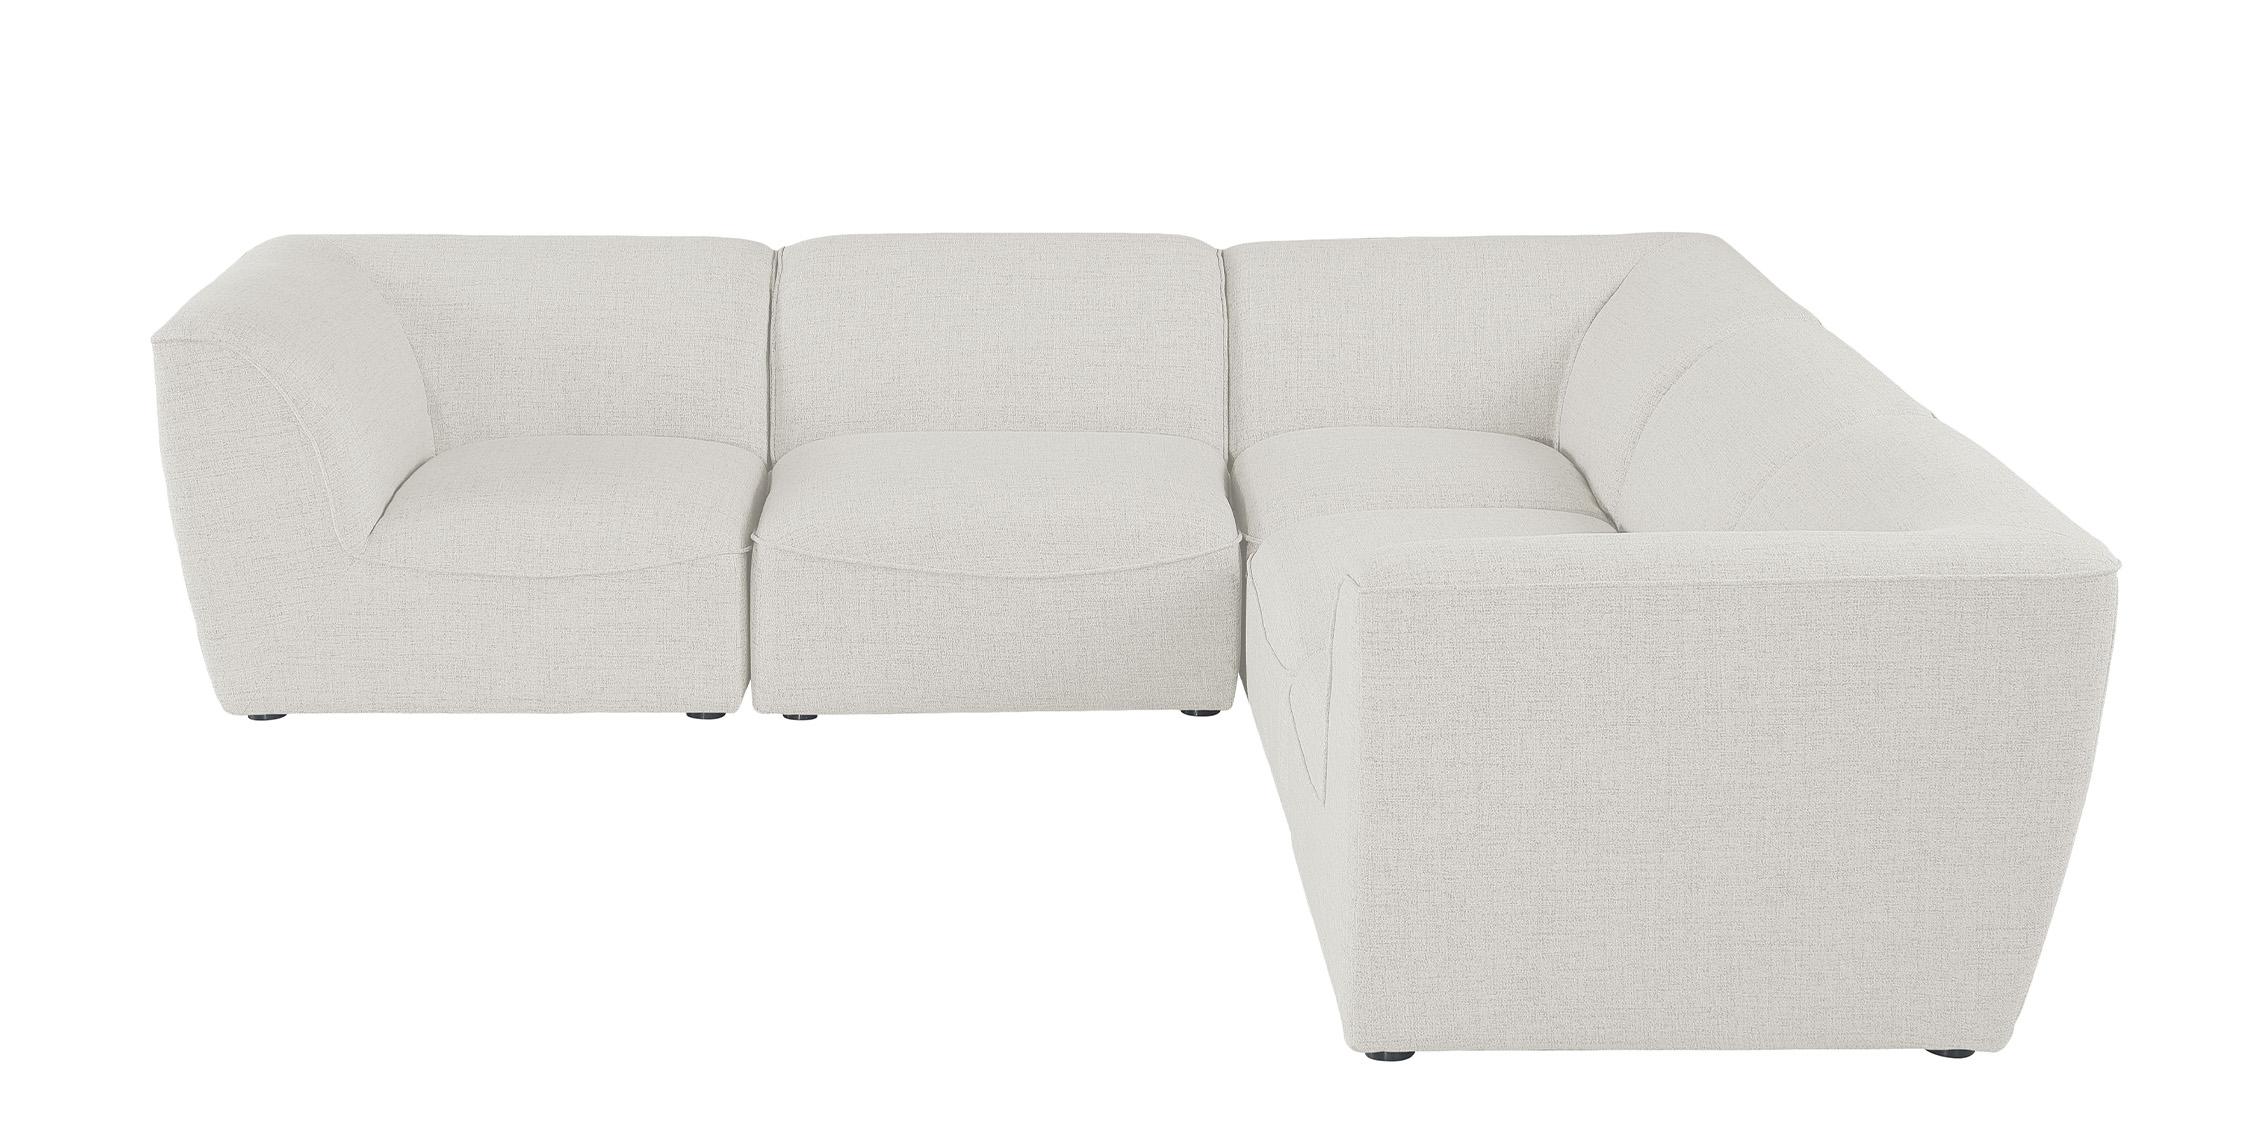 

    
Meridian Furniture MIRAMAR 683Cream-Sec5C Modular Sectional Sofa Cream 683Cream-Sec5C
